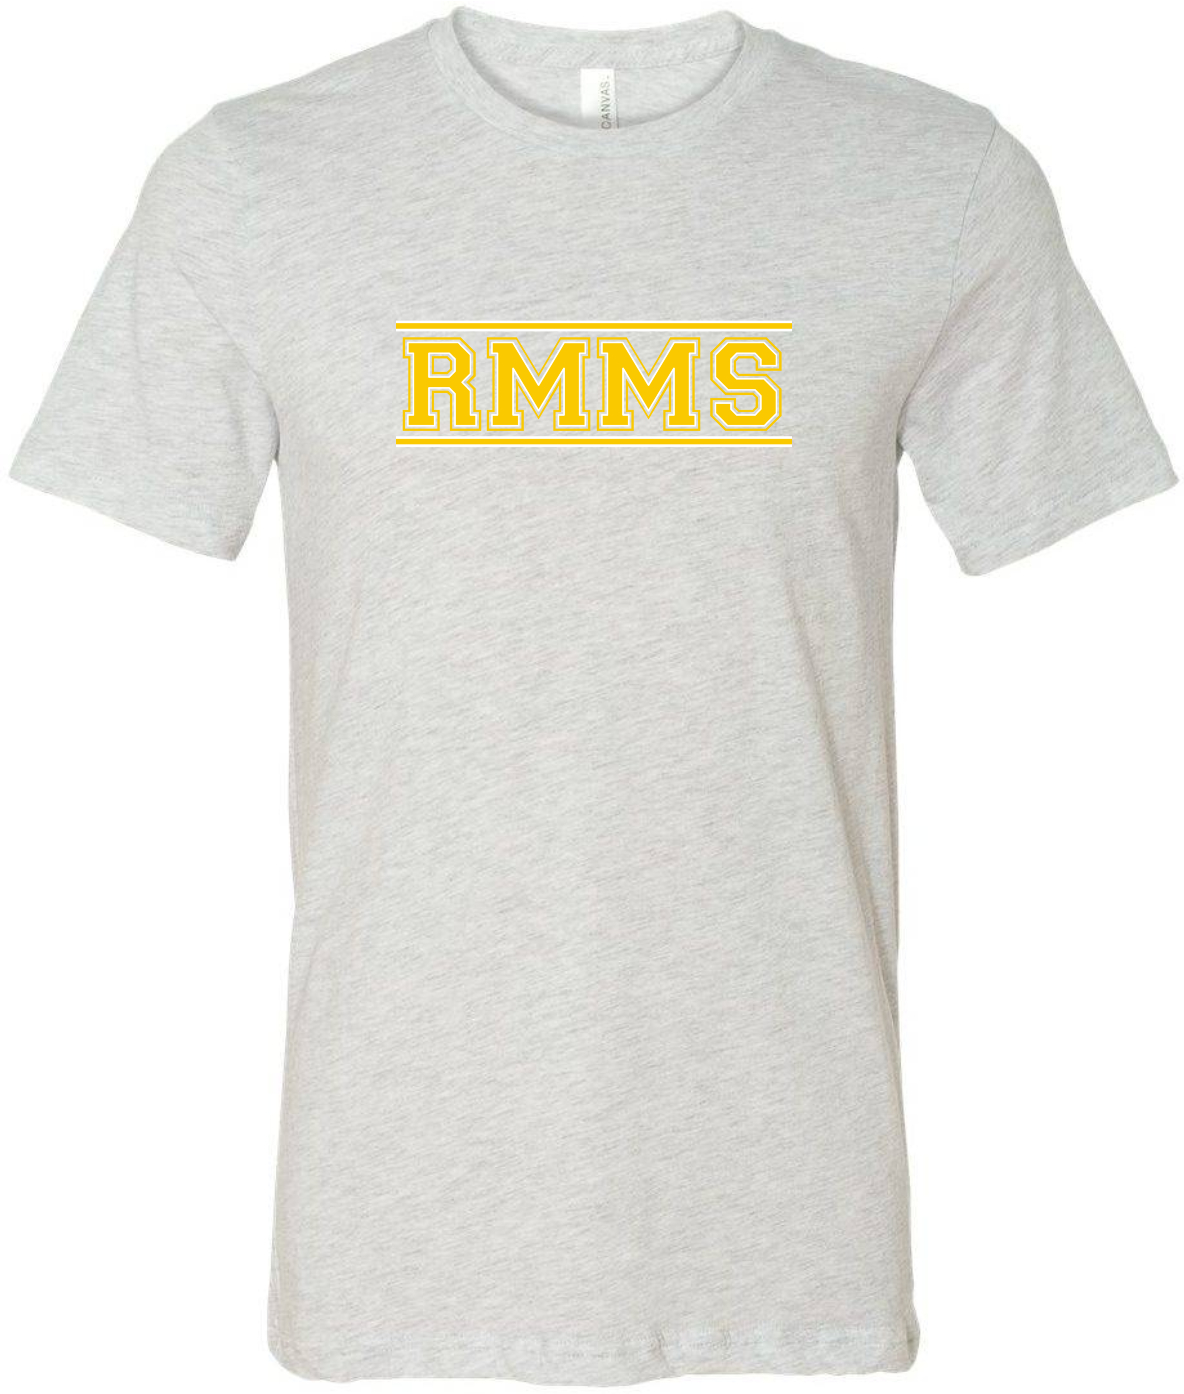 RMMS_yellow-white_C